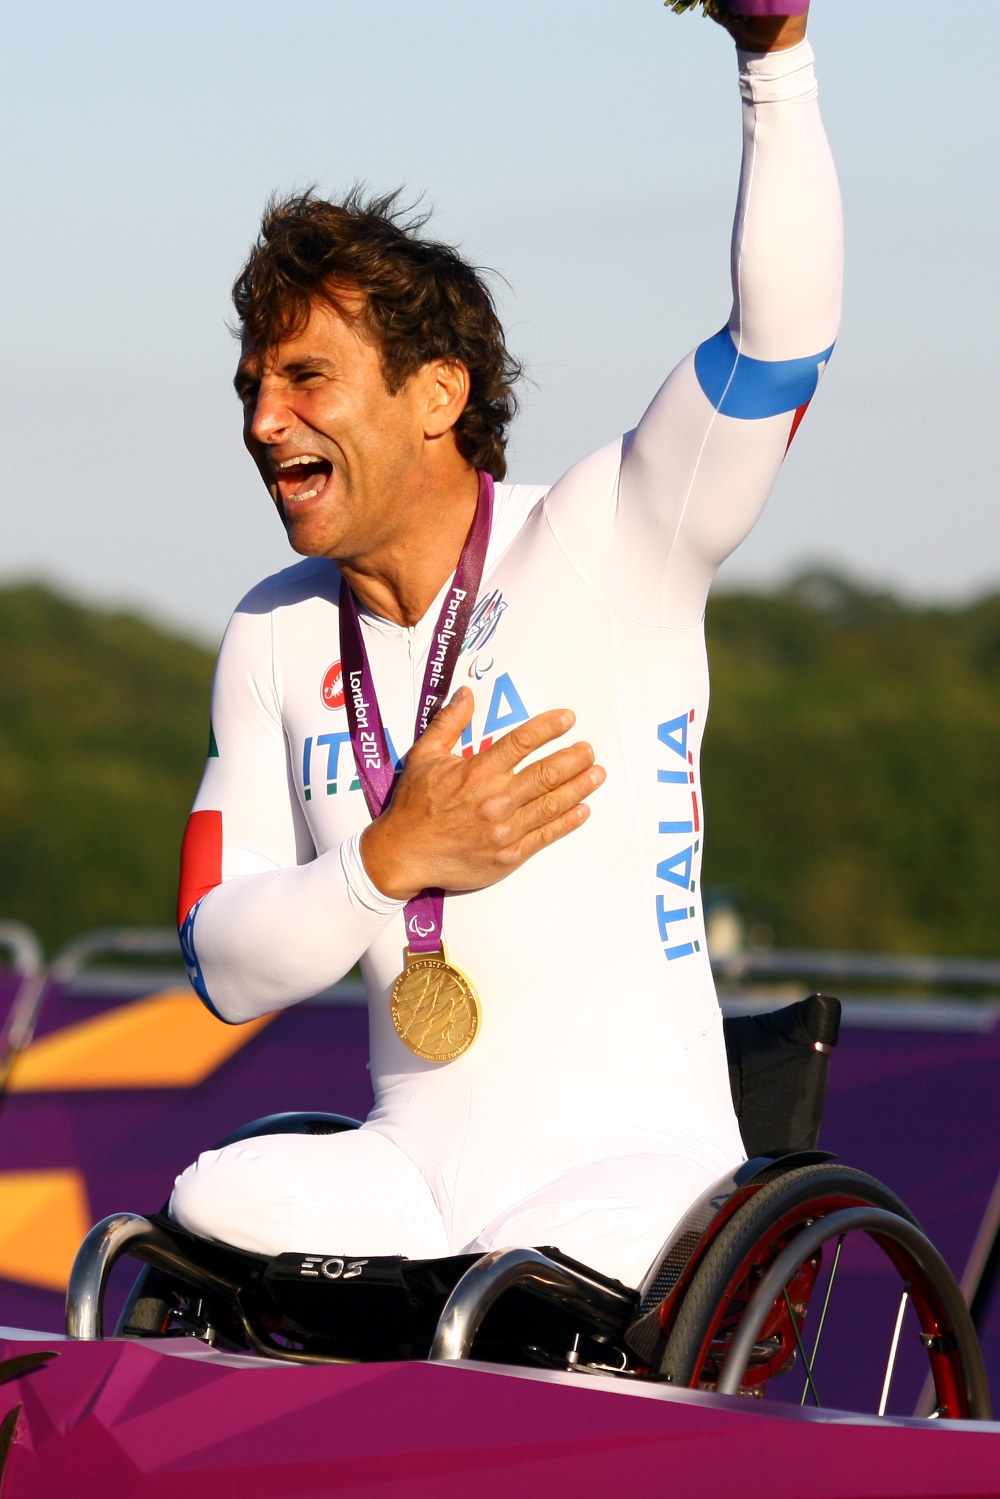 alex-zanardi-celebrates-his-gold-medal.jpg